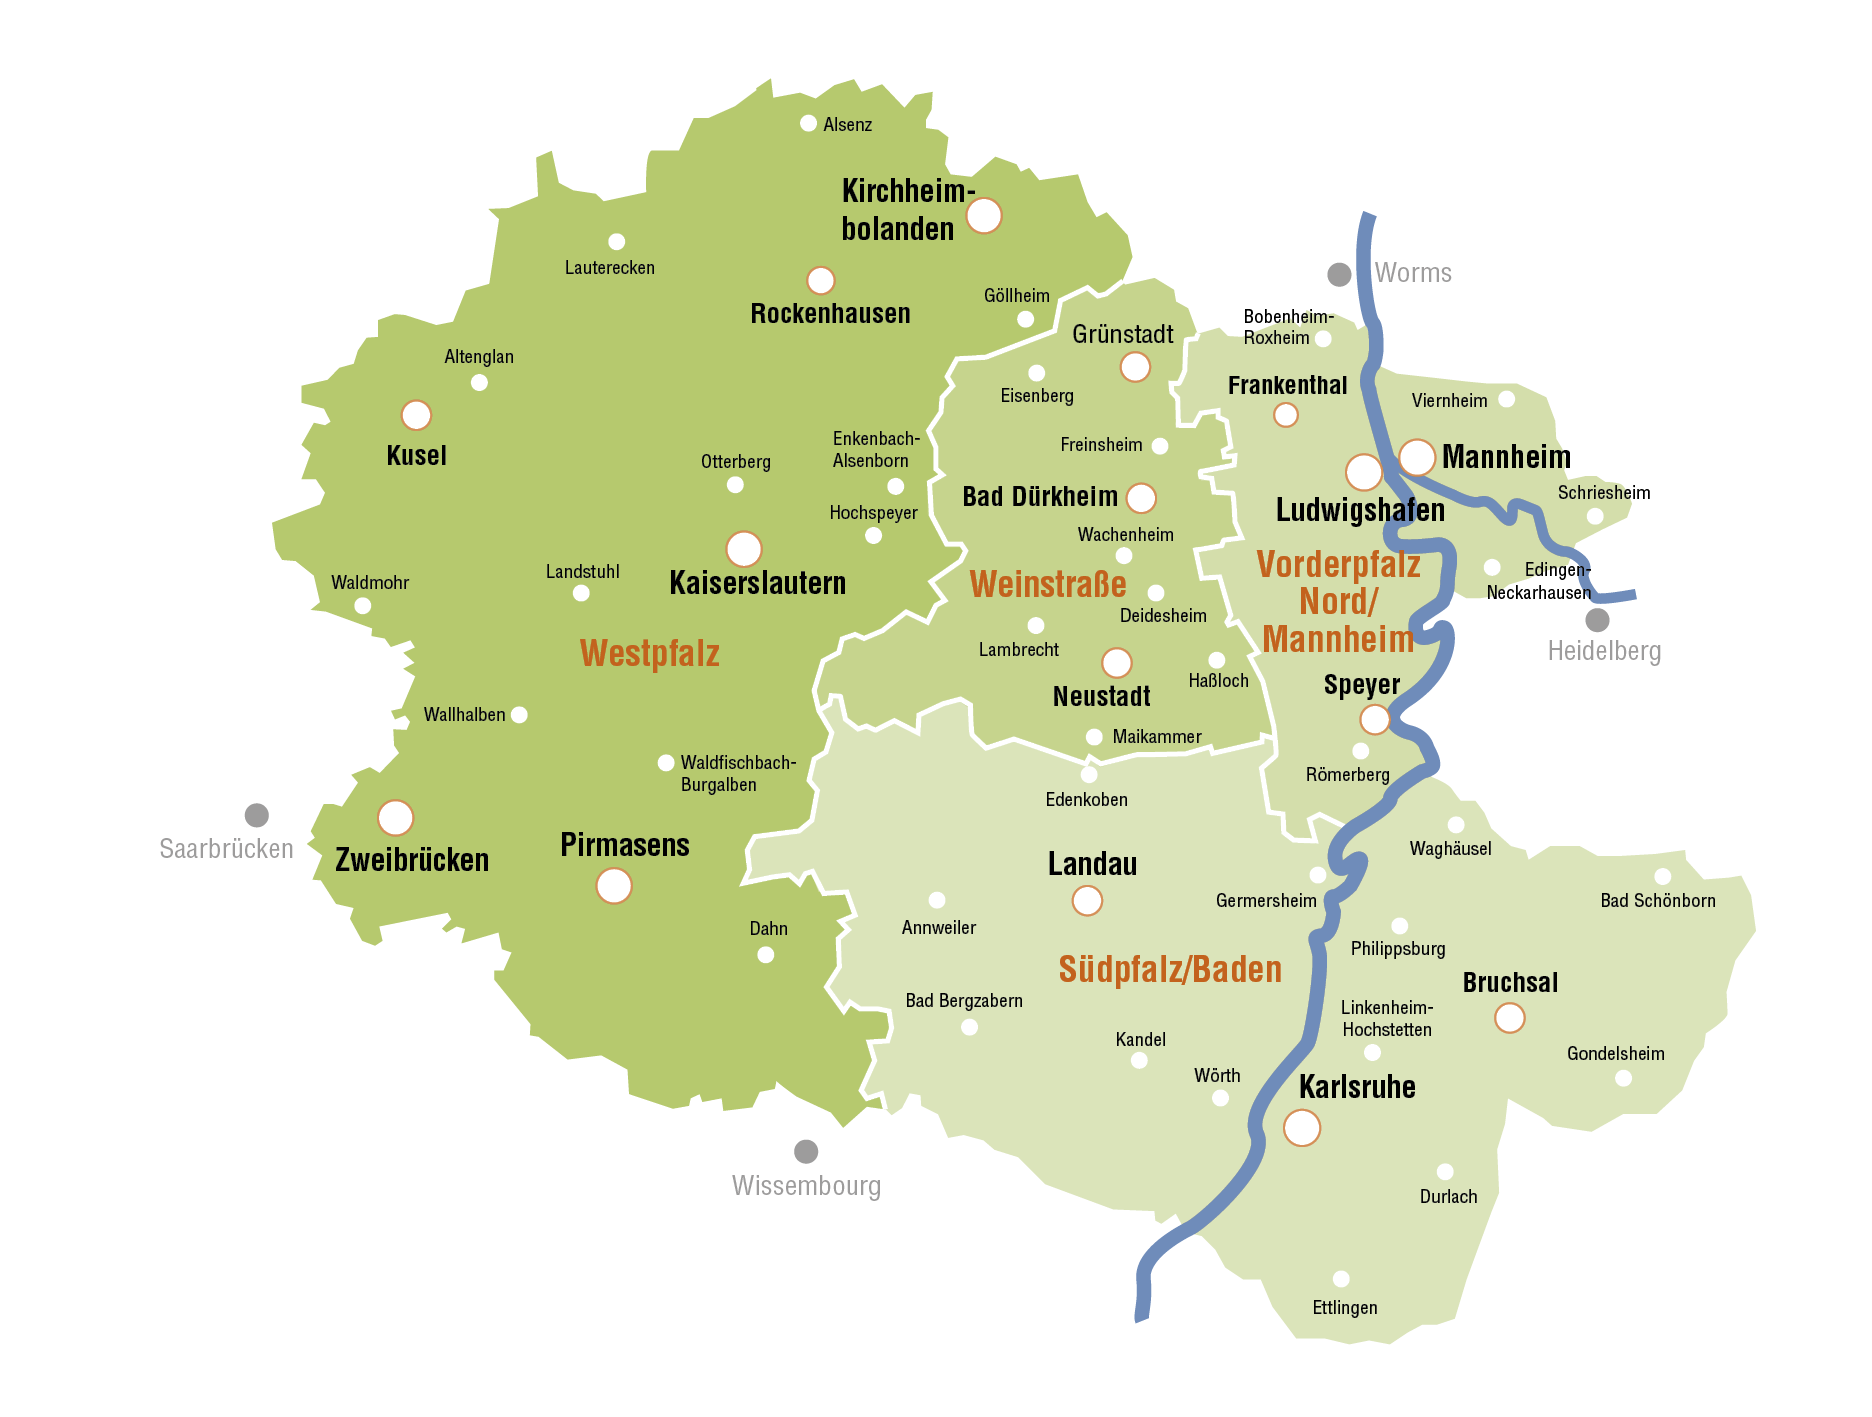 Die Karte für Ihre Werbeplanung über Mediawerk Südwest, welche die vier Regionalbereiche Westpfalz, Südpfalz/Baden, Vorderpfalz Nord/Mannheim und die Weinstraße sowie die verschiedenen Städte zeigt.